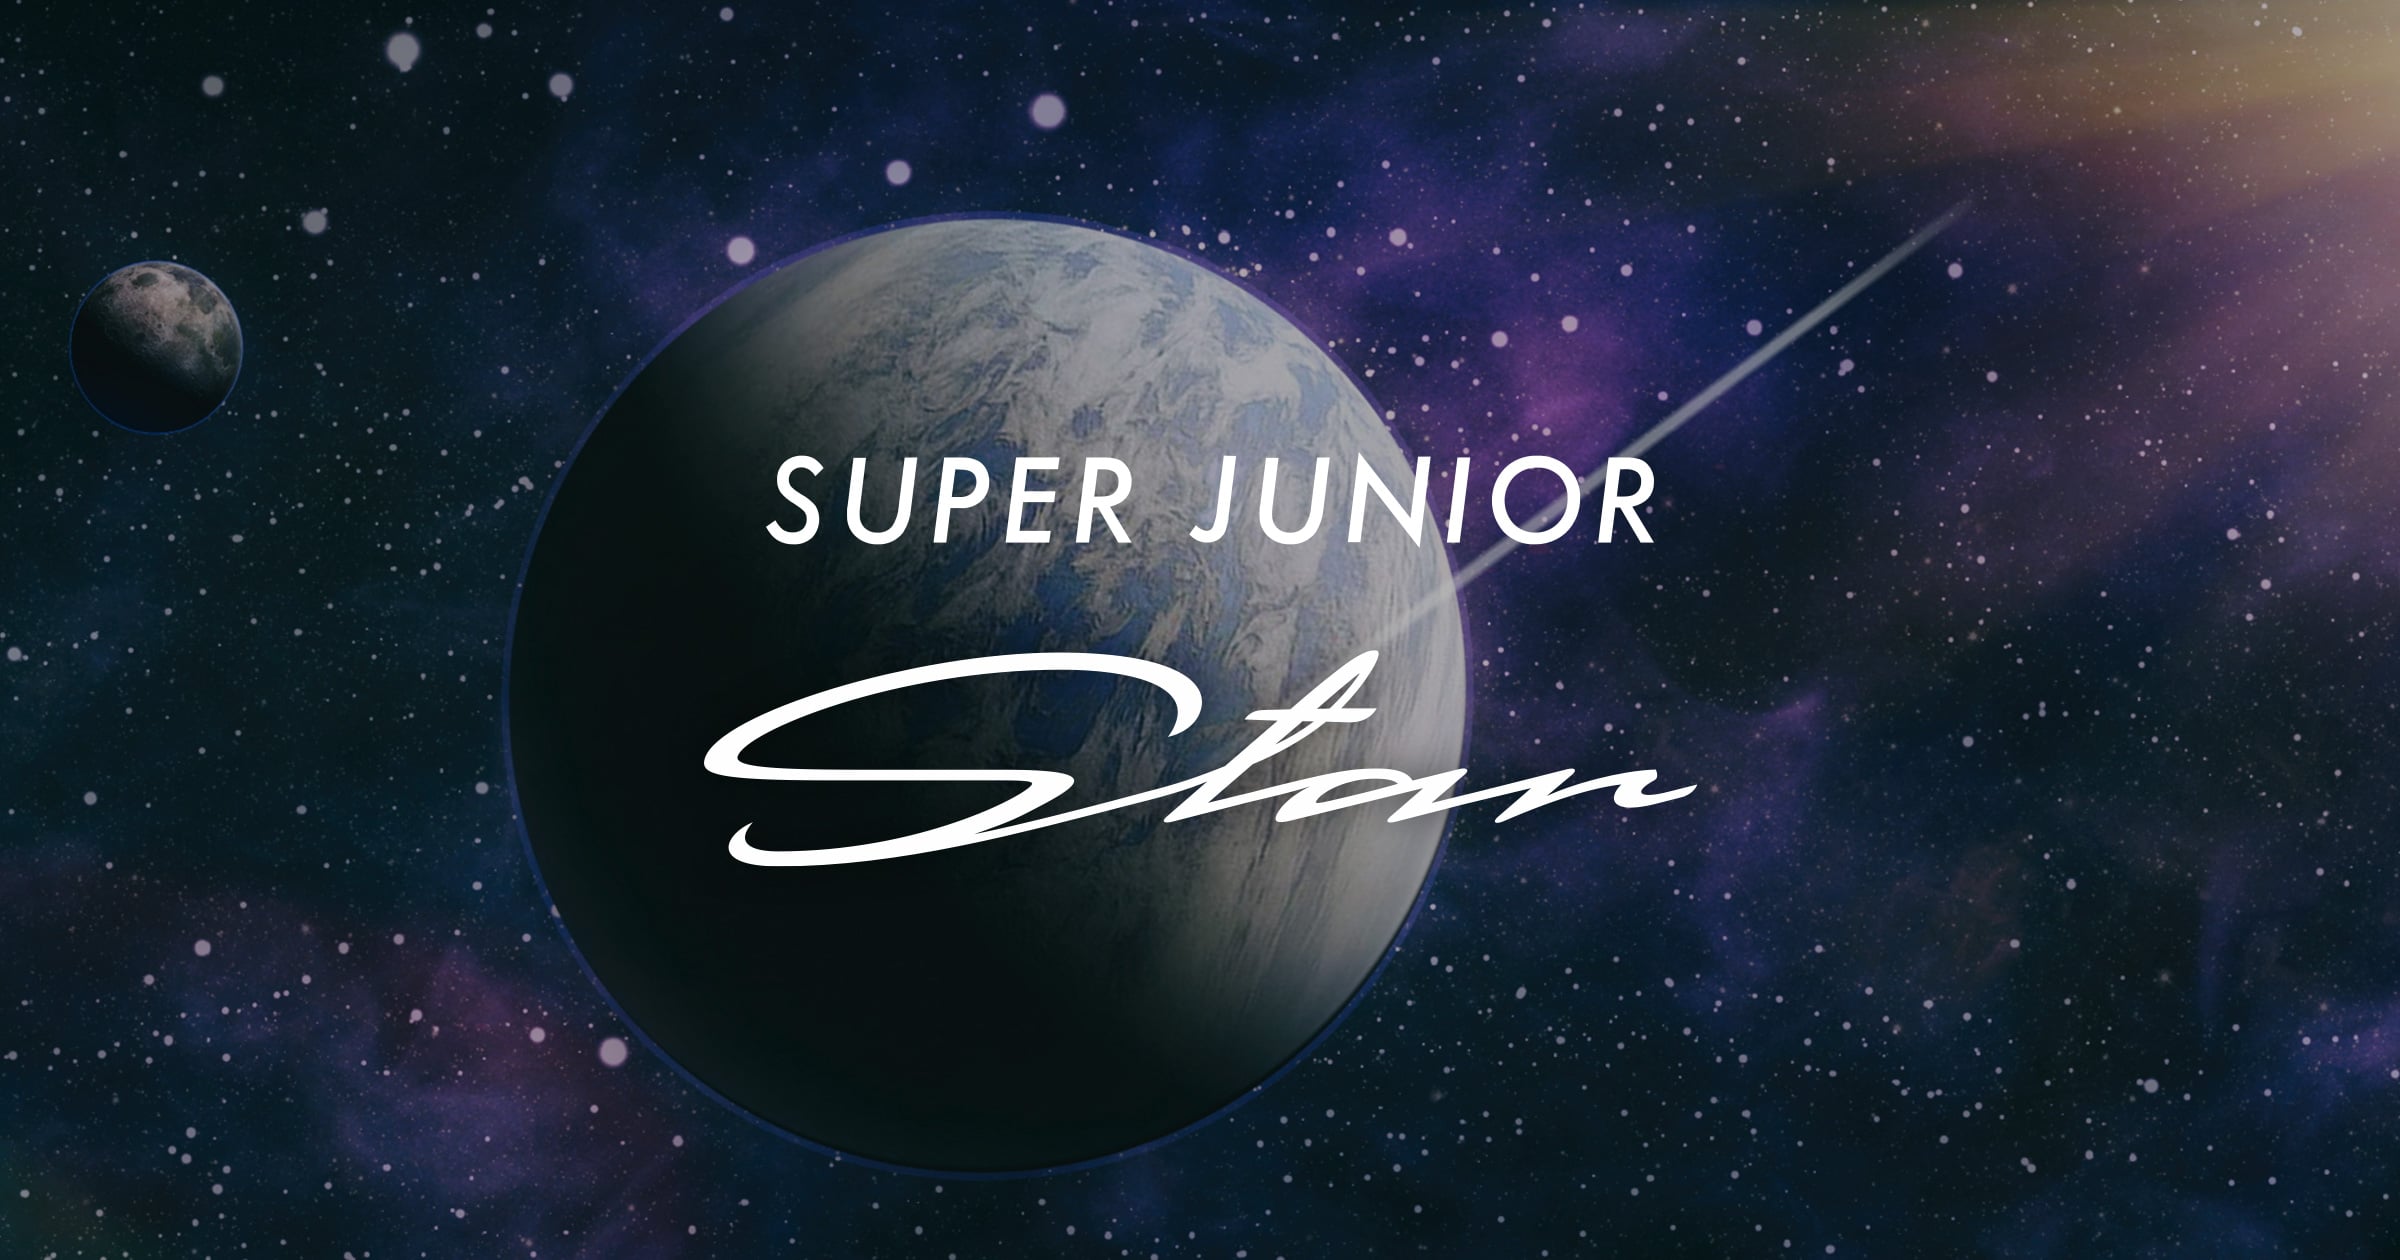 Super Junior New Album Star 購入者限定特典サイト